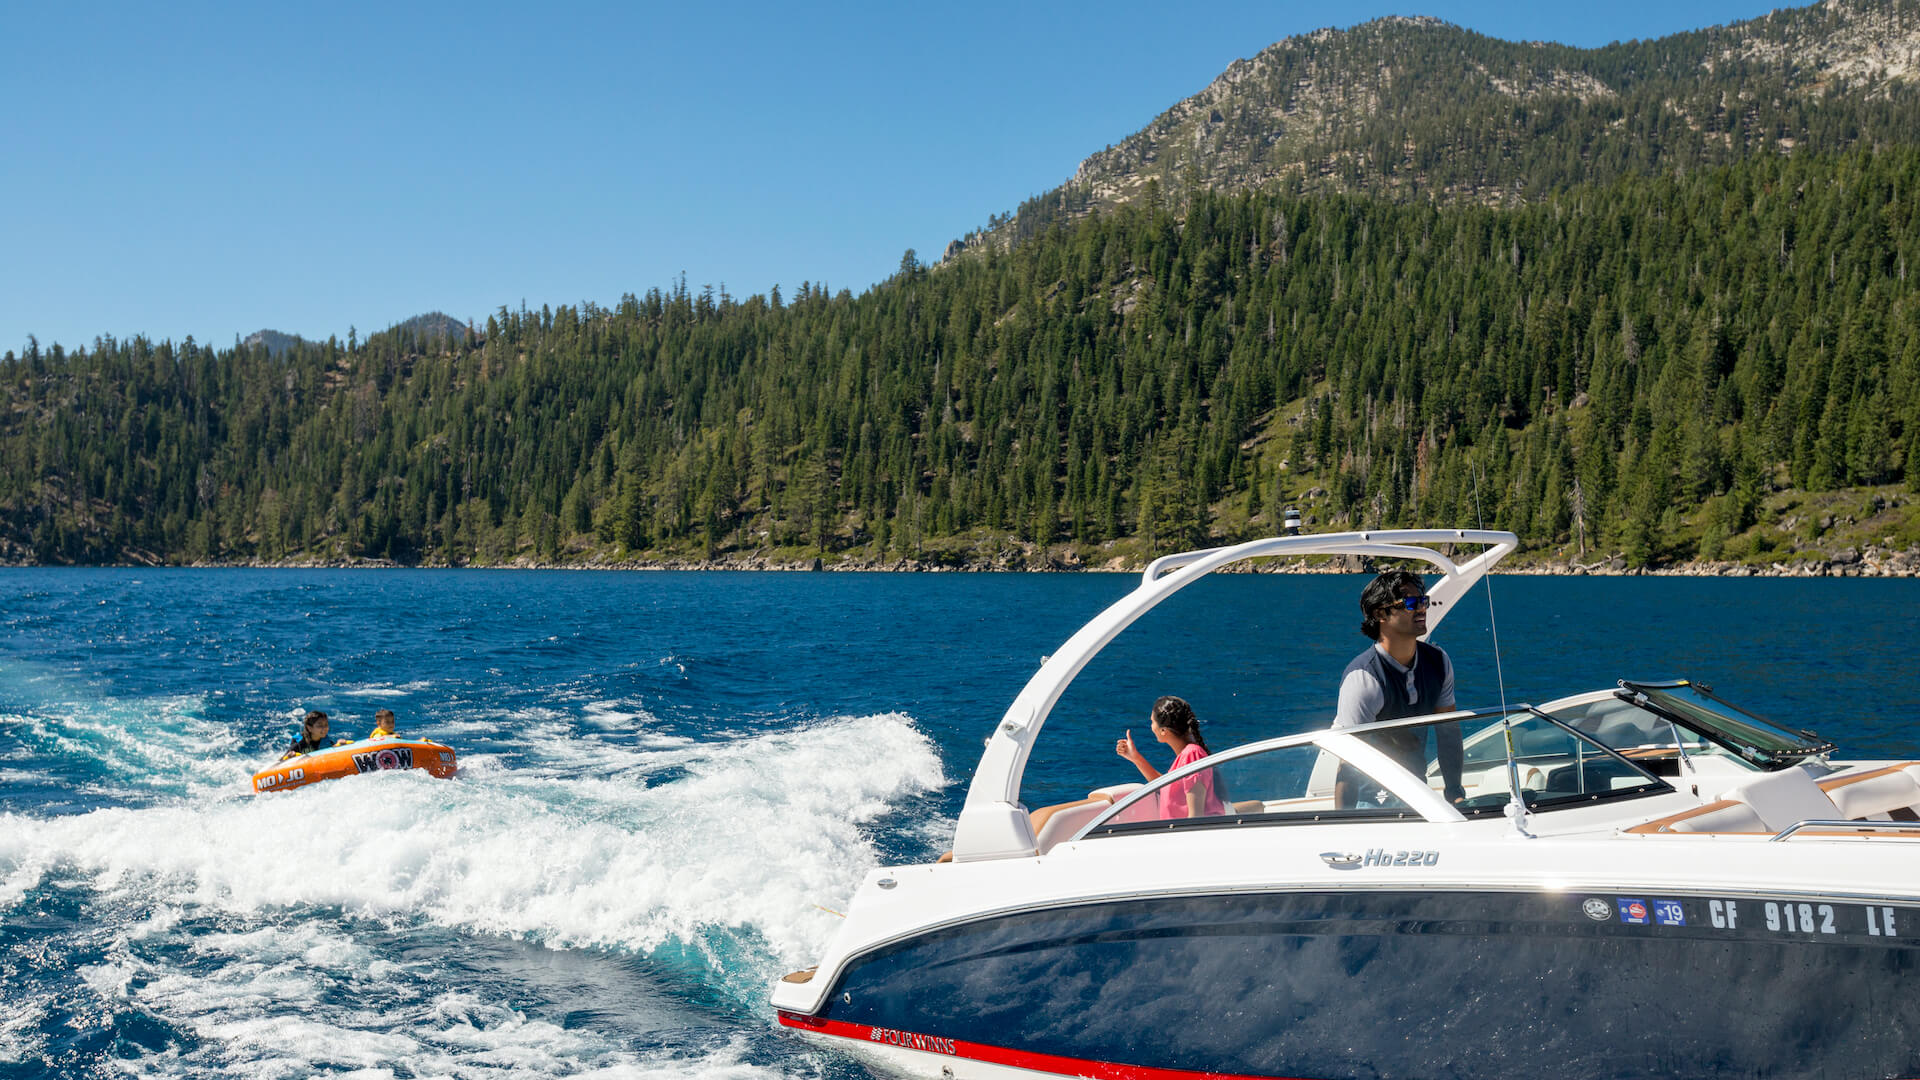 Tubing with speed boat at Lake Tahoe - Rachid Dahnoun / LTVA